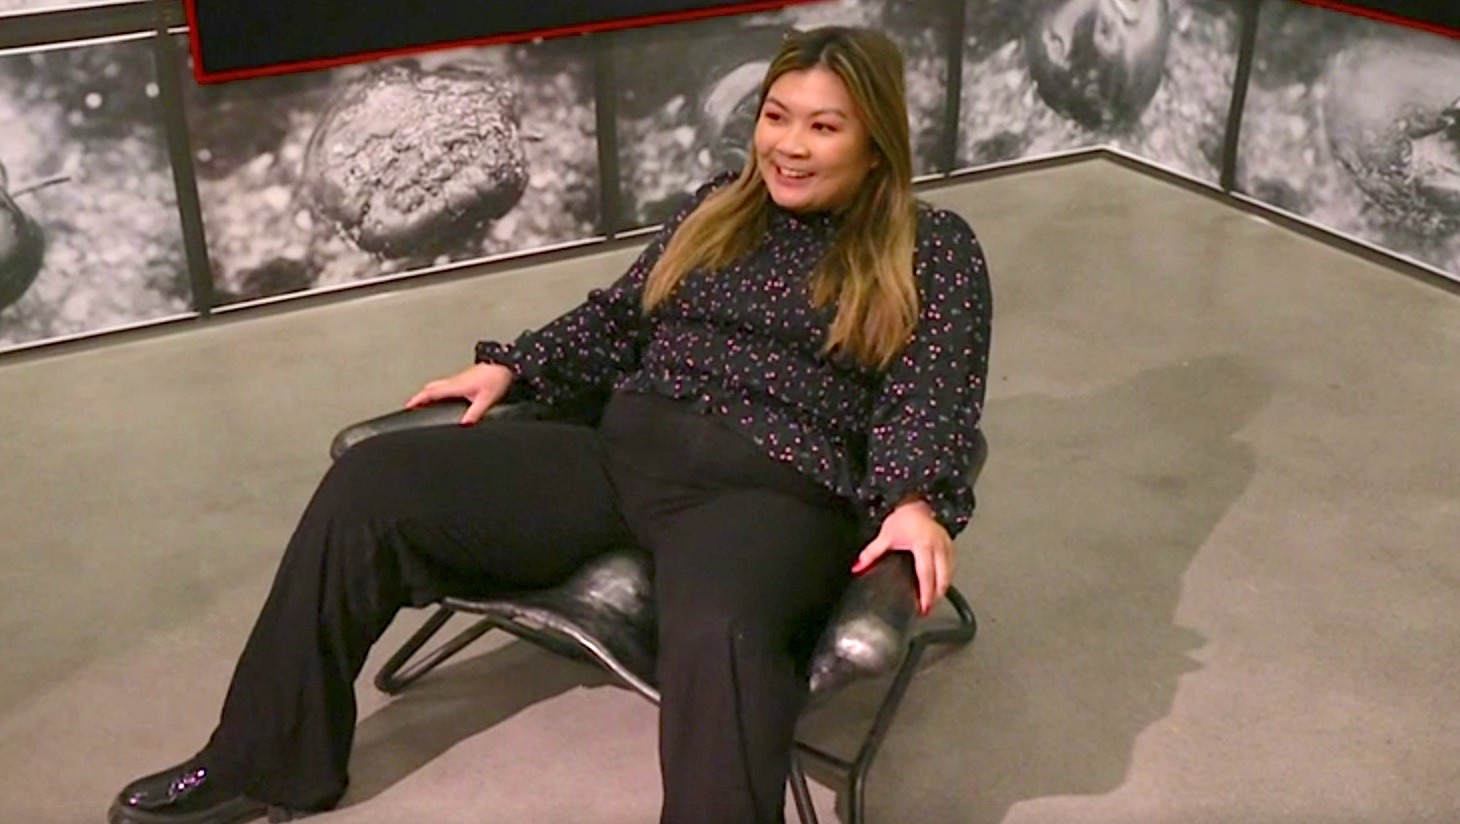 TV 2-reporteren tester ut «onani-stol» på direkten